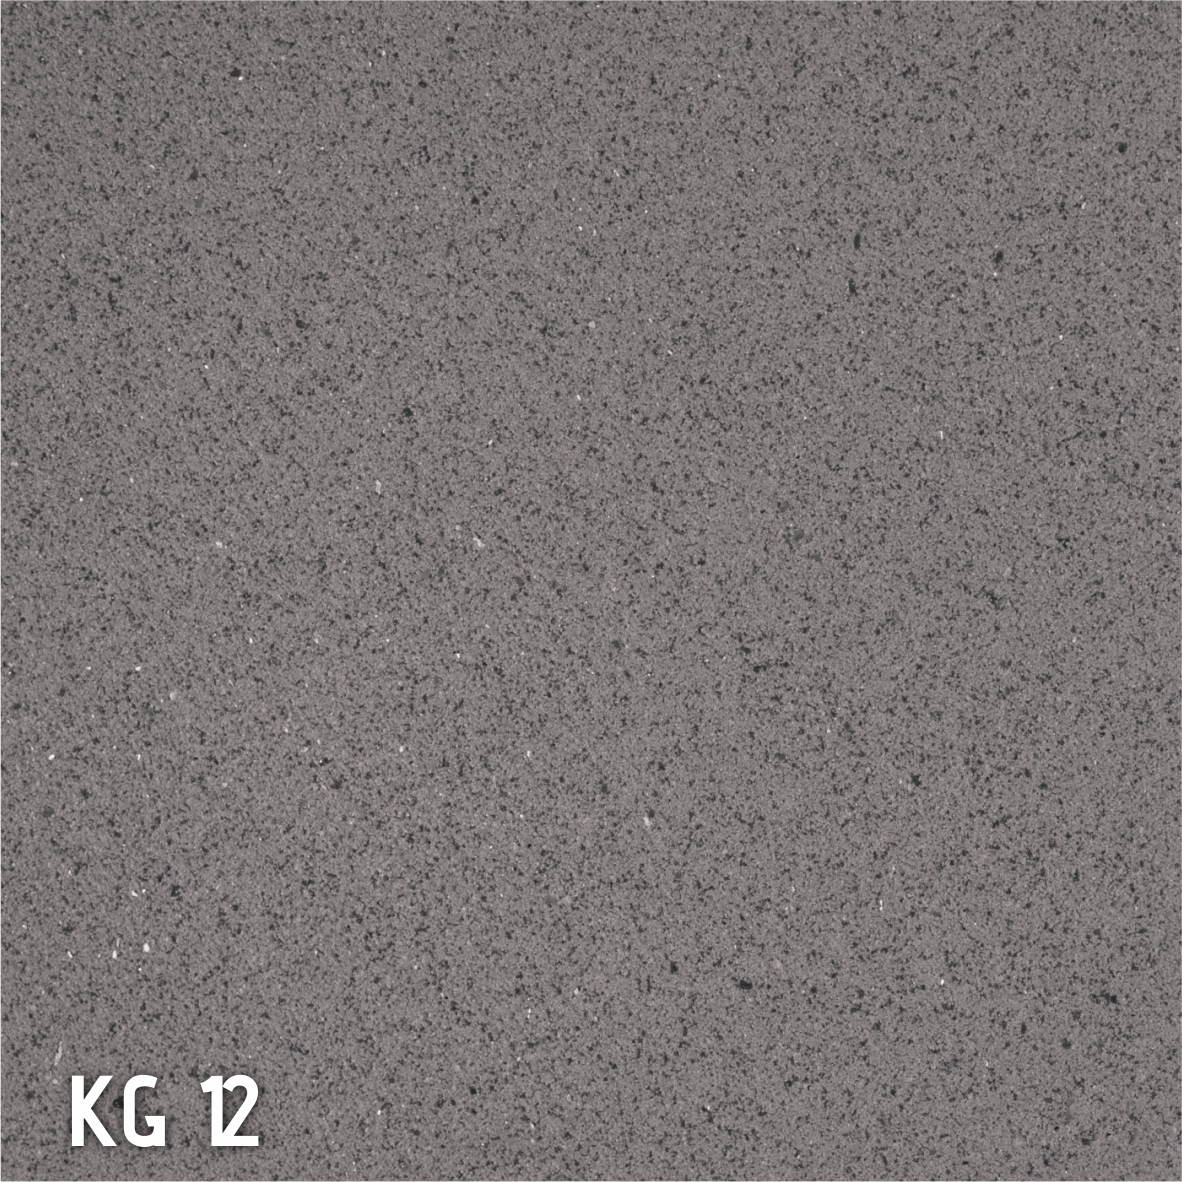 Revestimento quartzo flexível KG 12